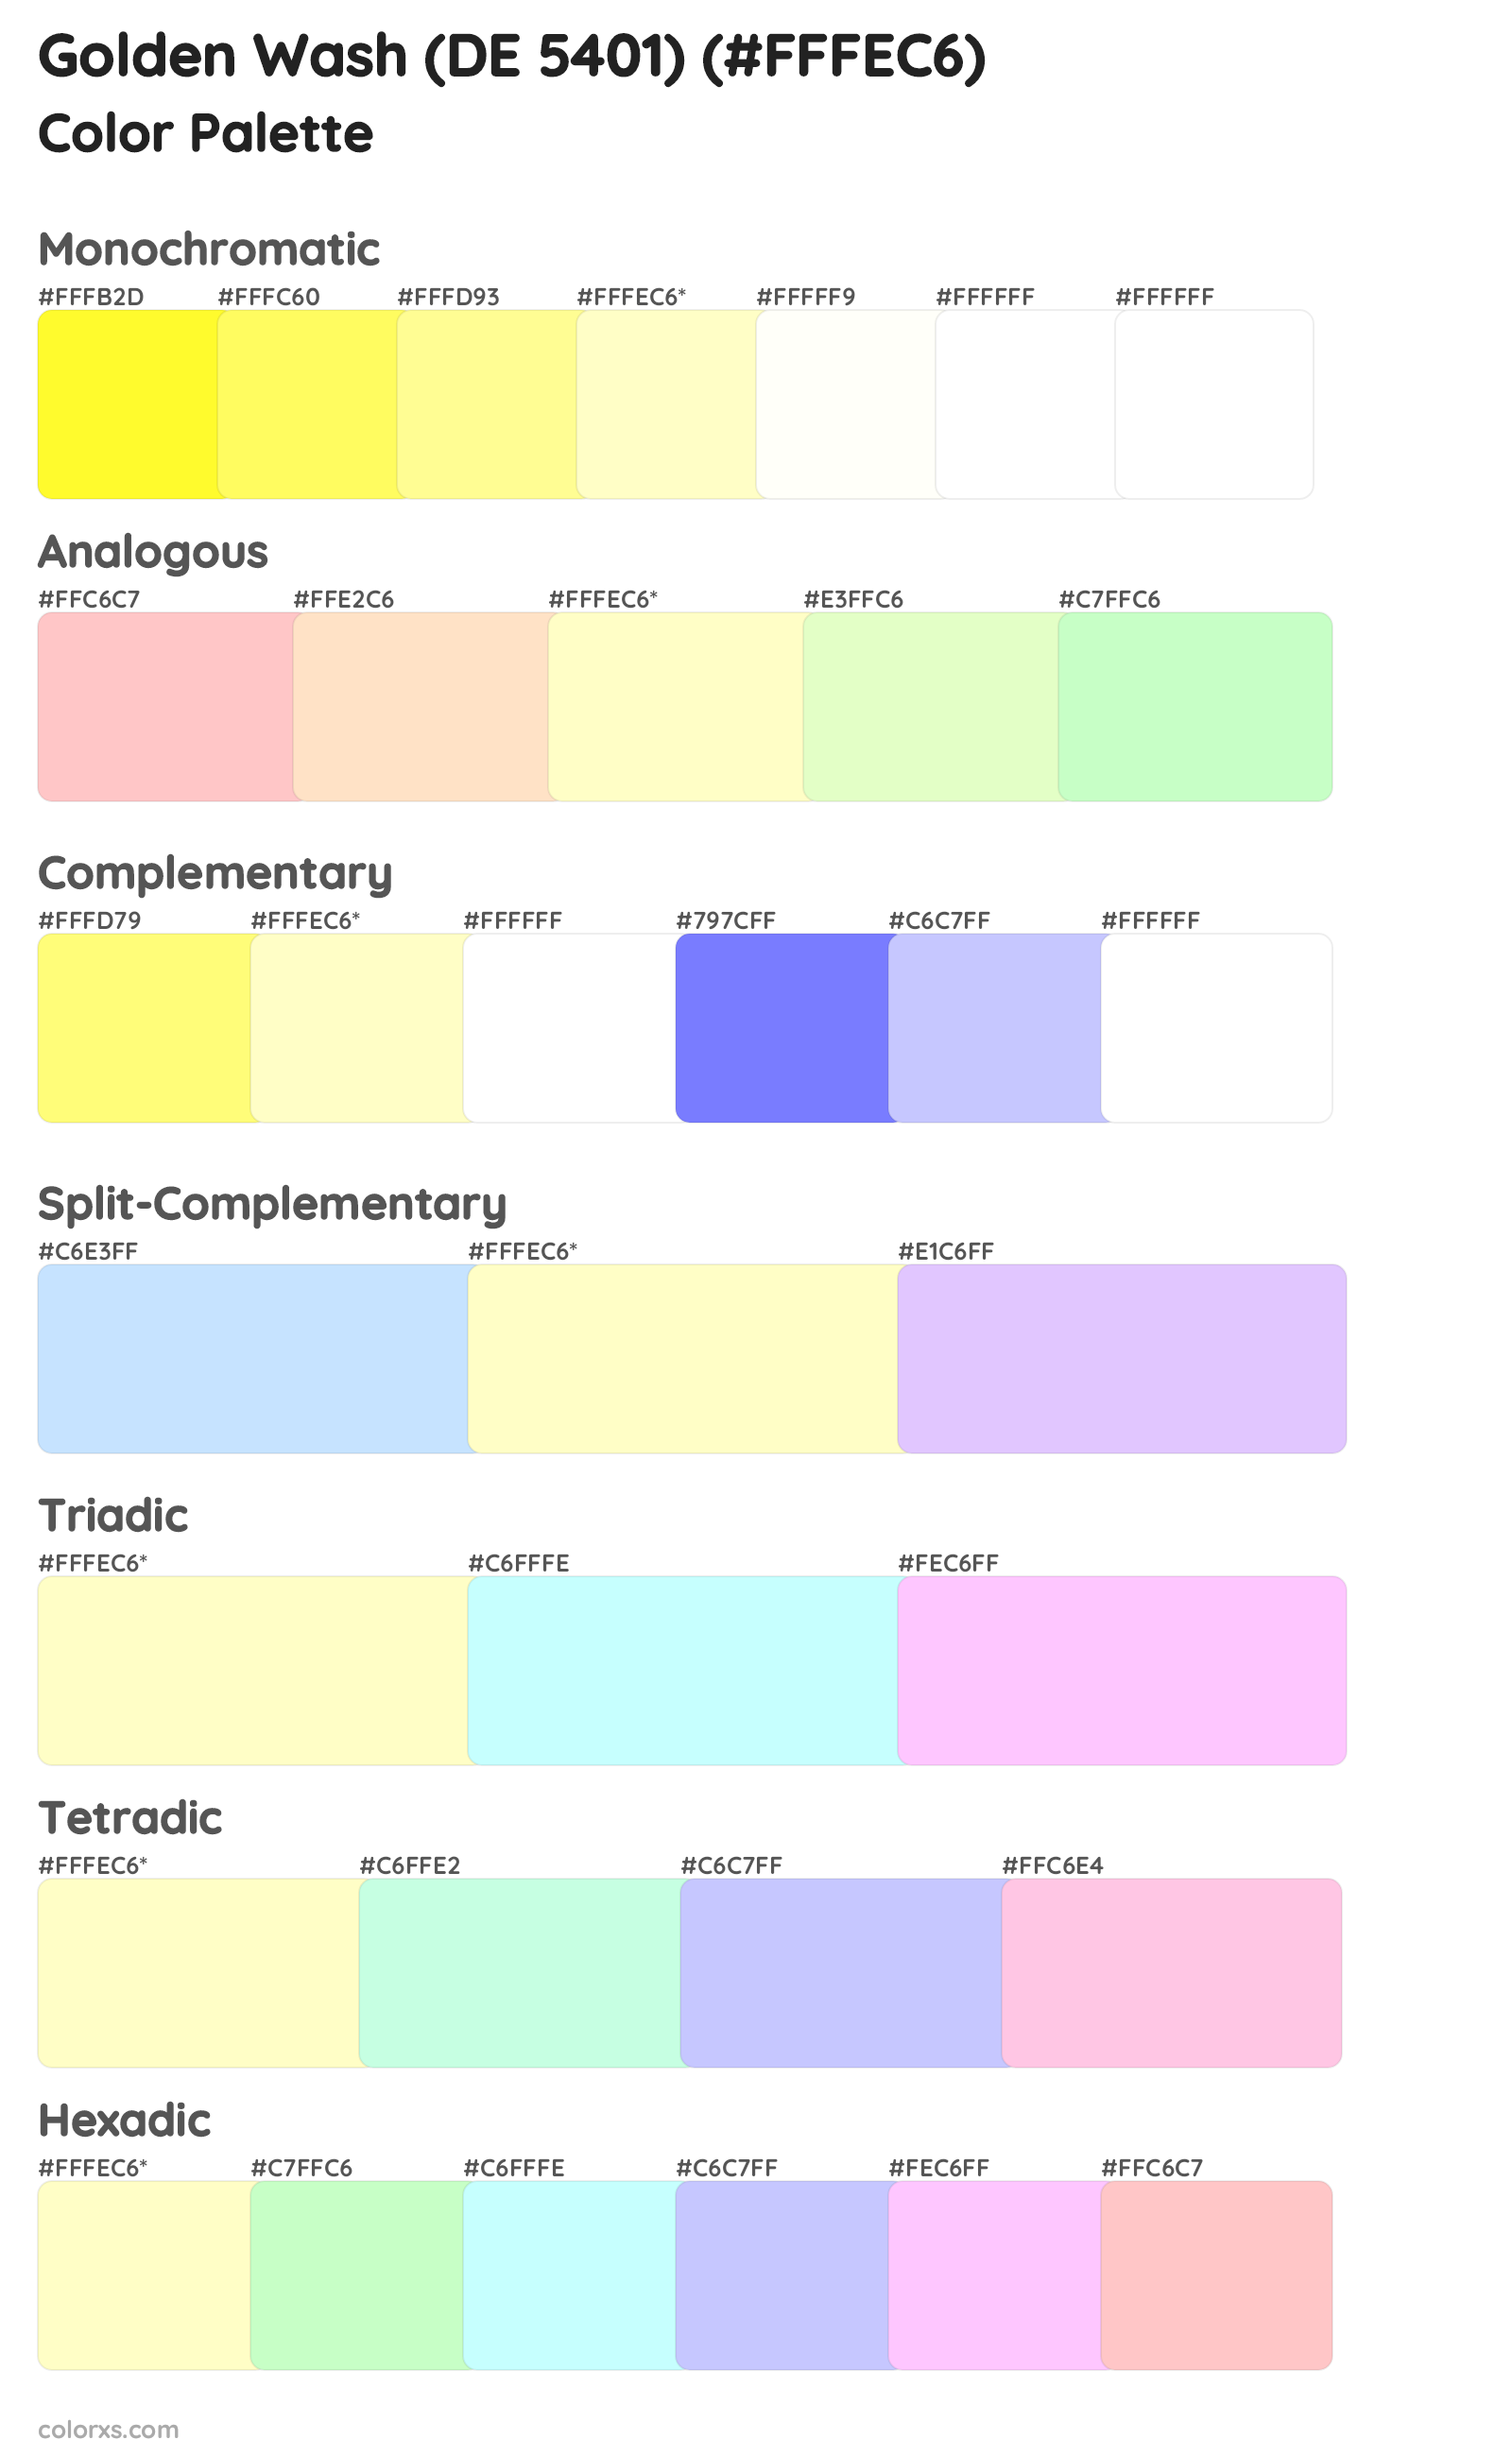 Golden Wash (DE 5401) Color Scheme Palettes